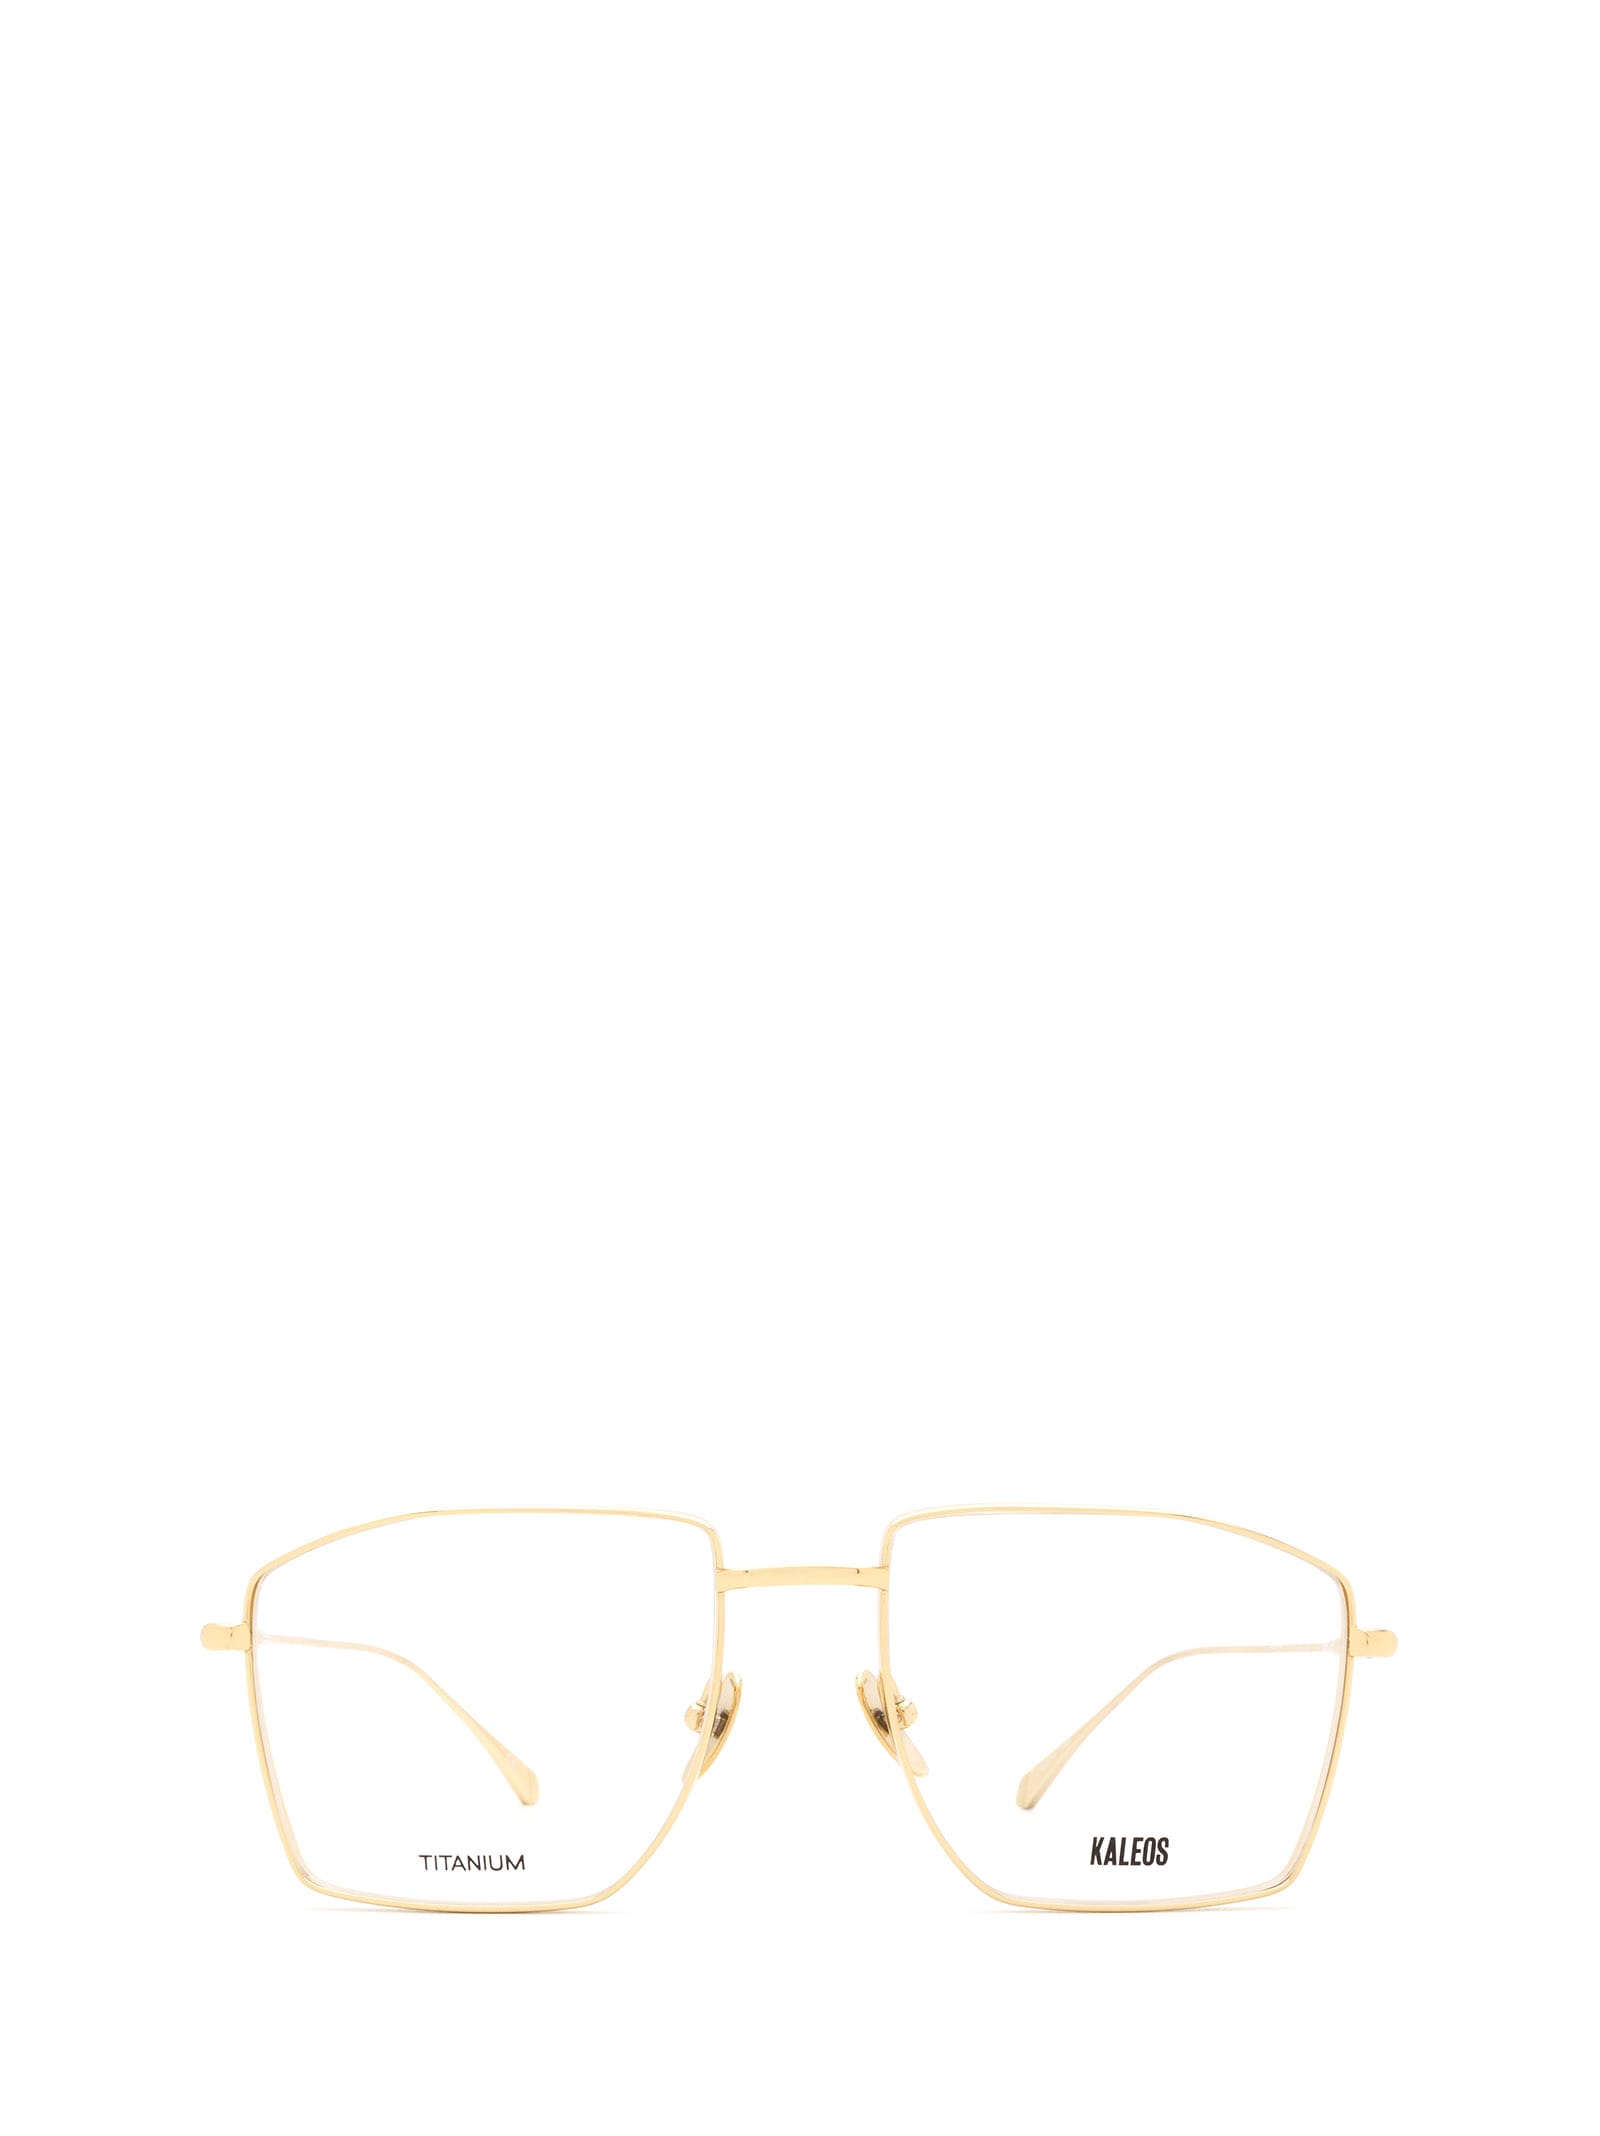 Kaleos Dunn Gold Glasses